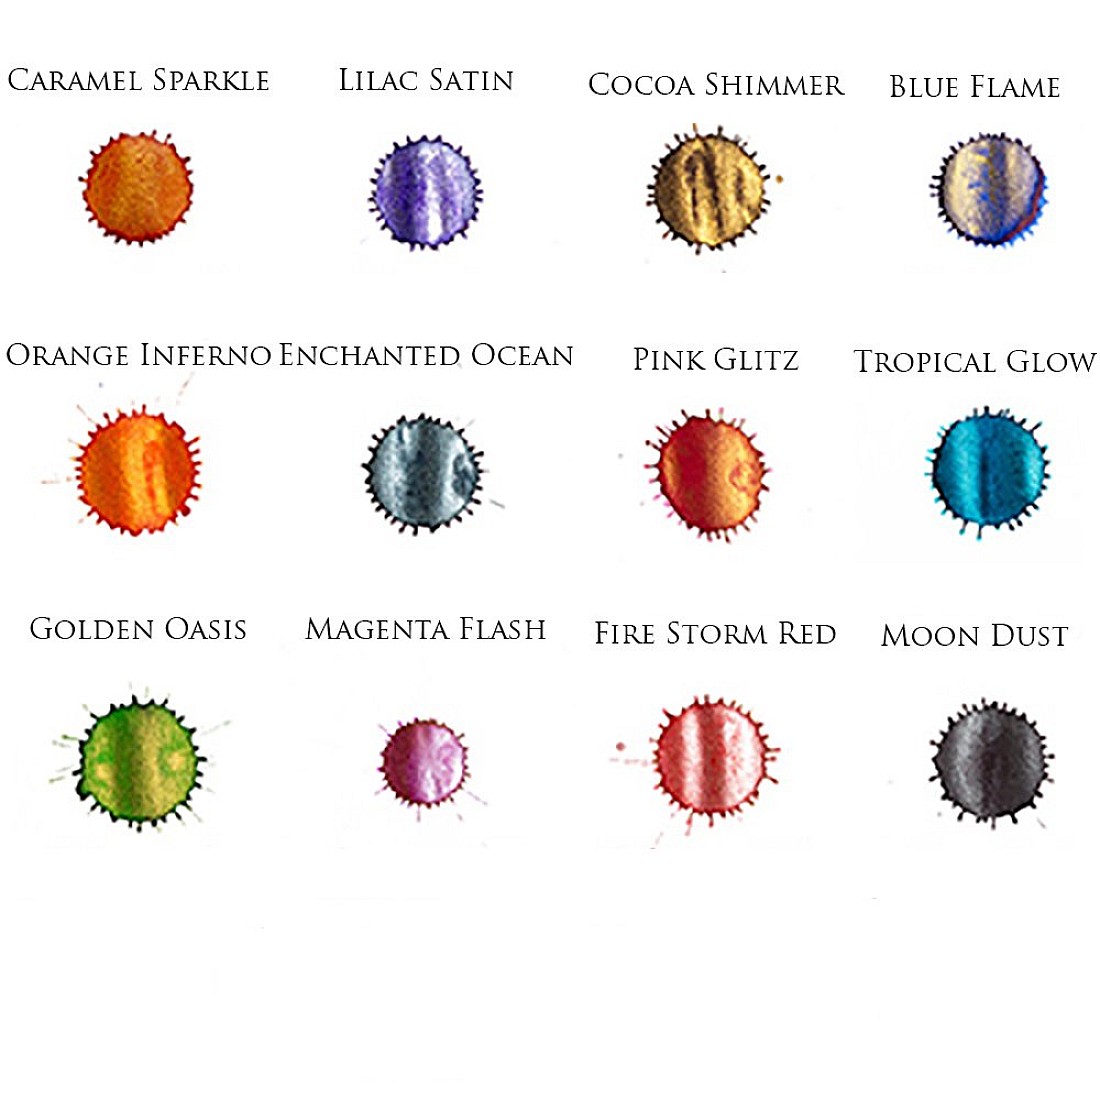 Diamine Shimmering Ink - Ink Bottle (40 colors)